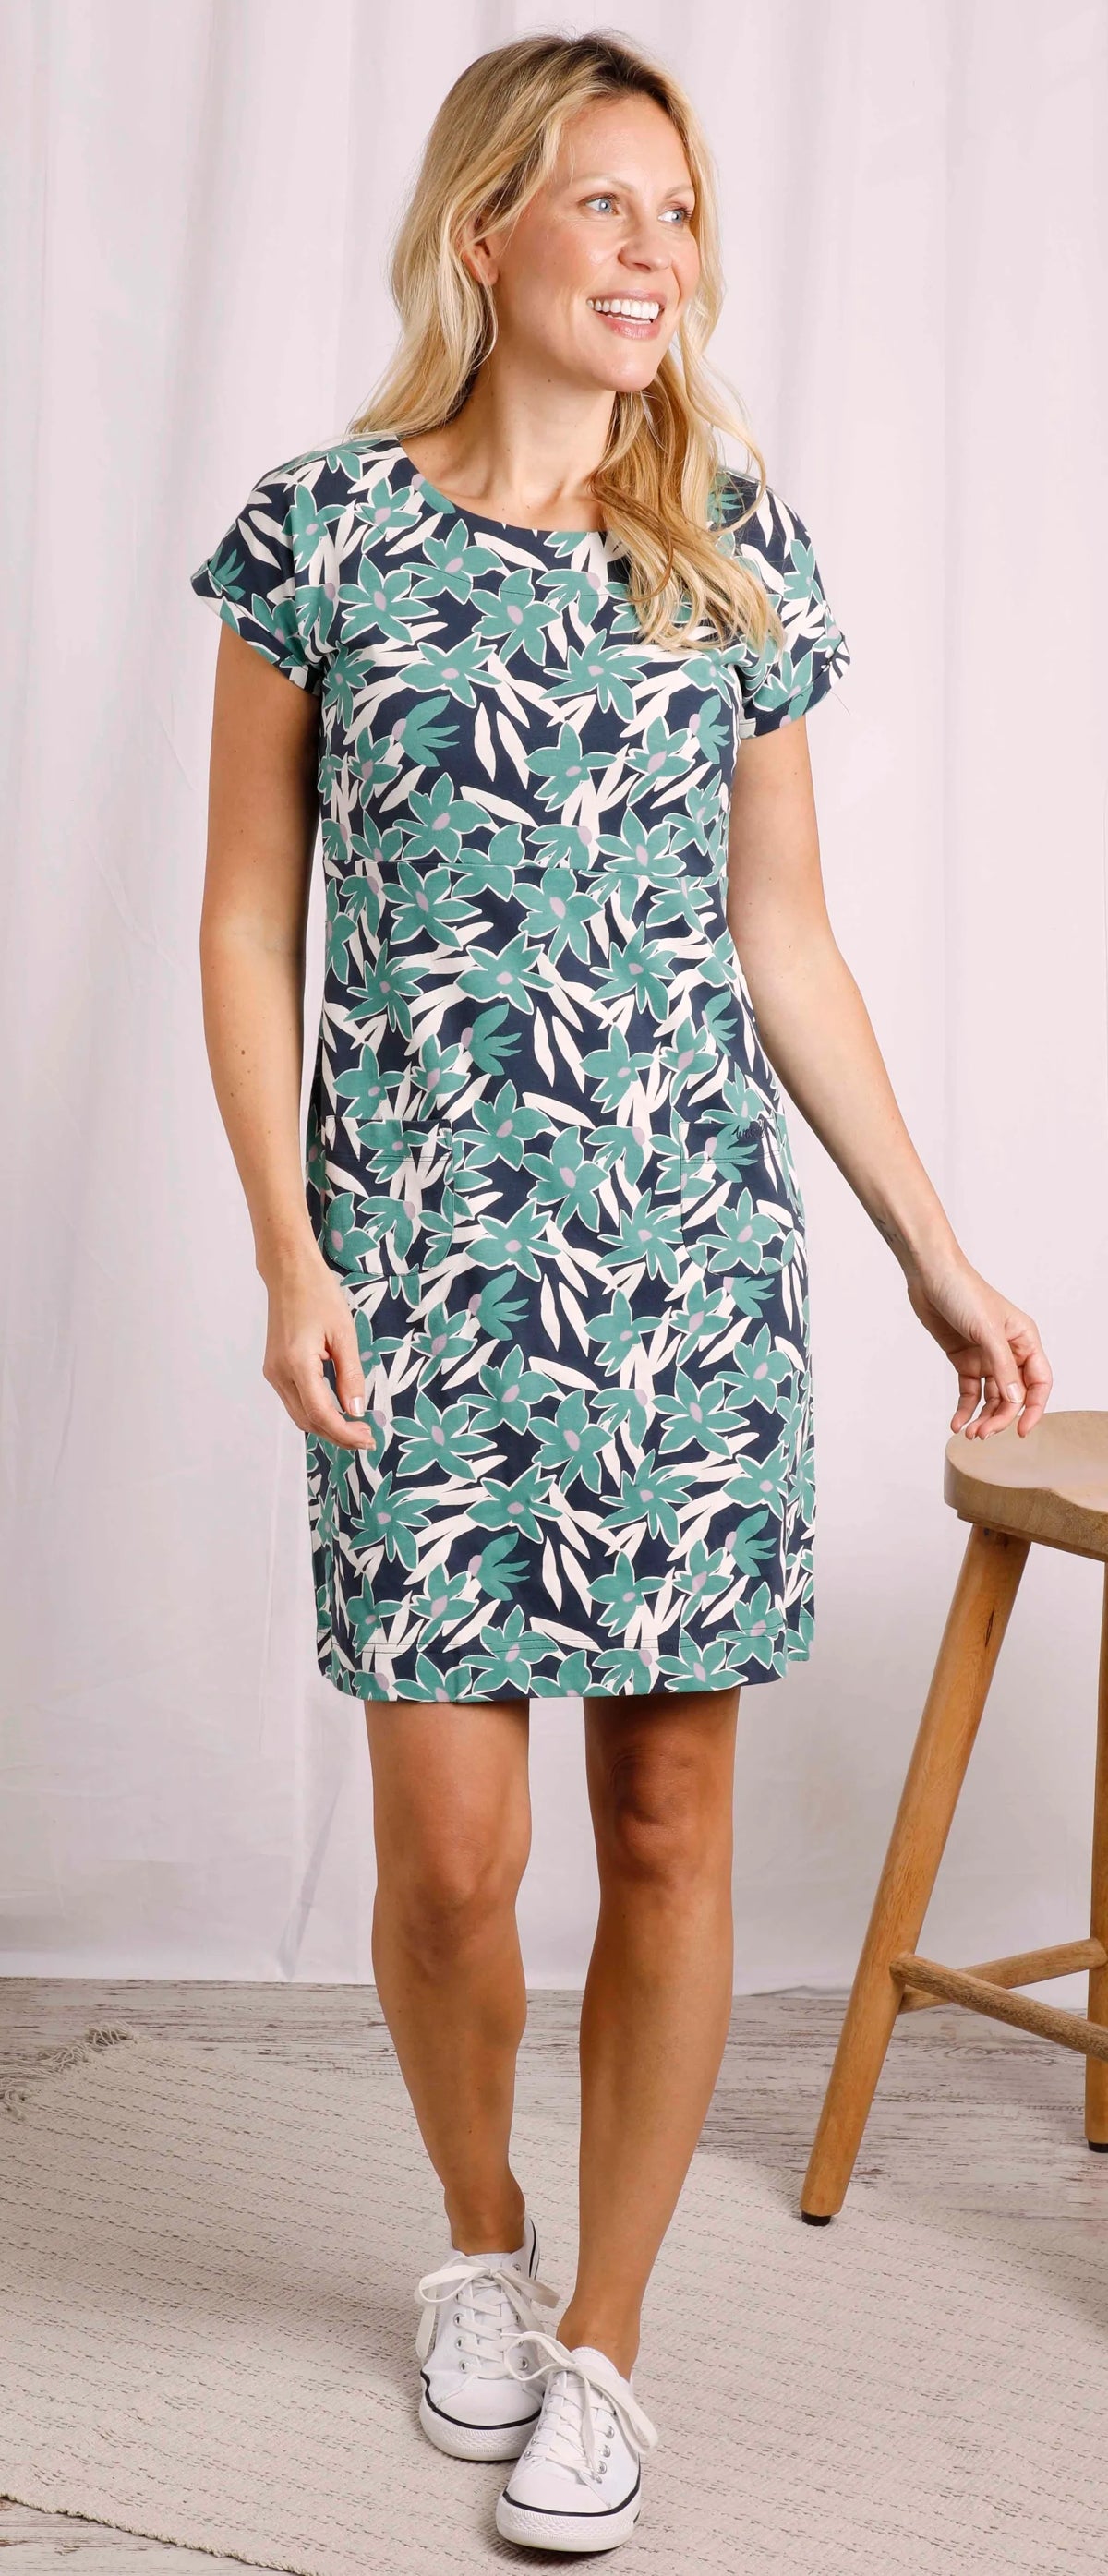 Weird Fish women's short sleeve Tallahassee jersey dress in a Dark Jade Green floral print.